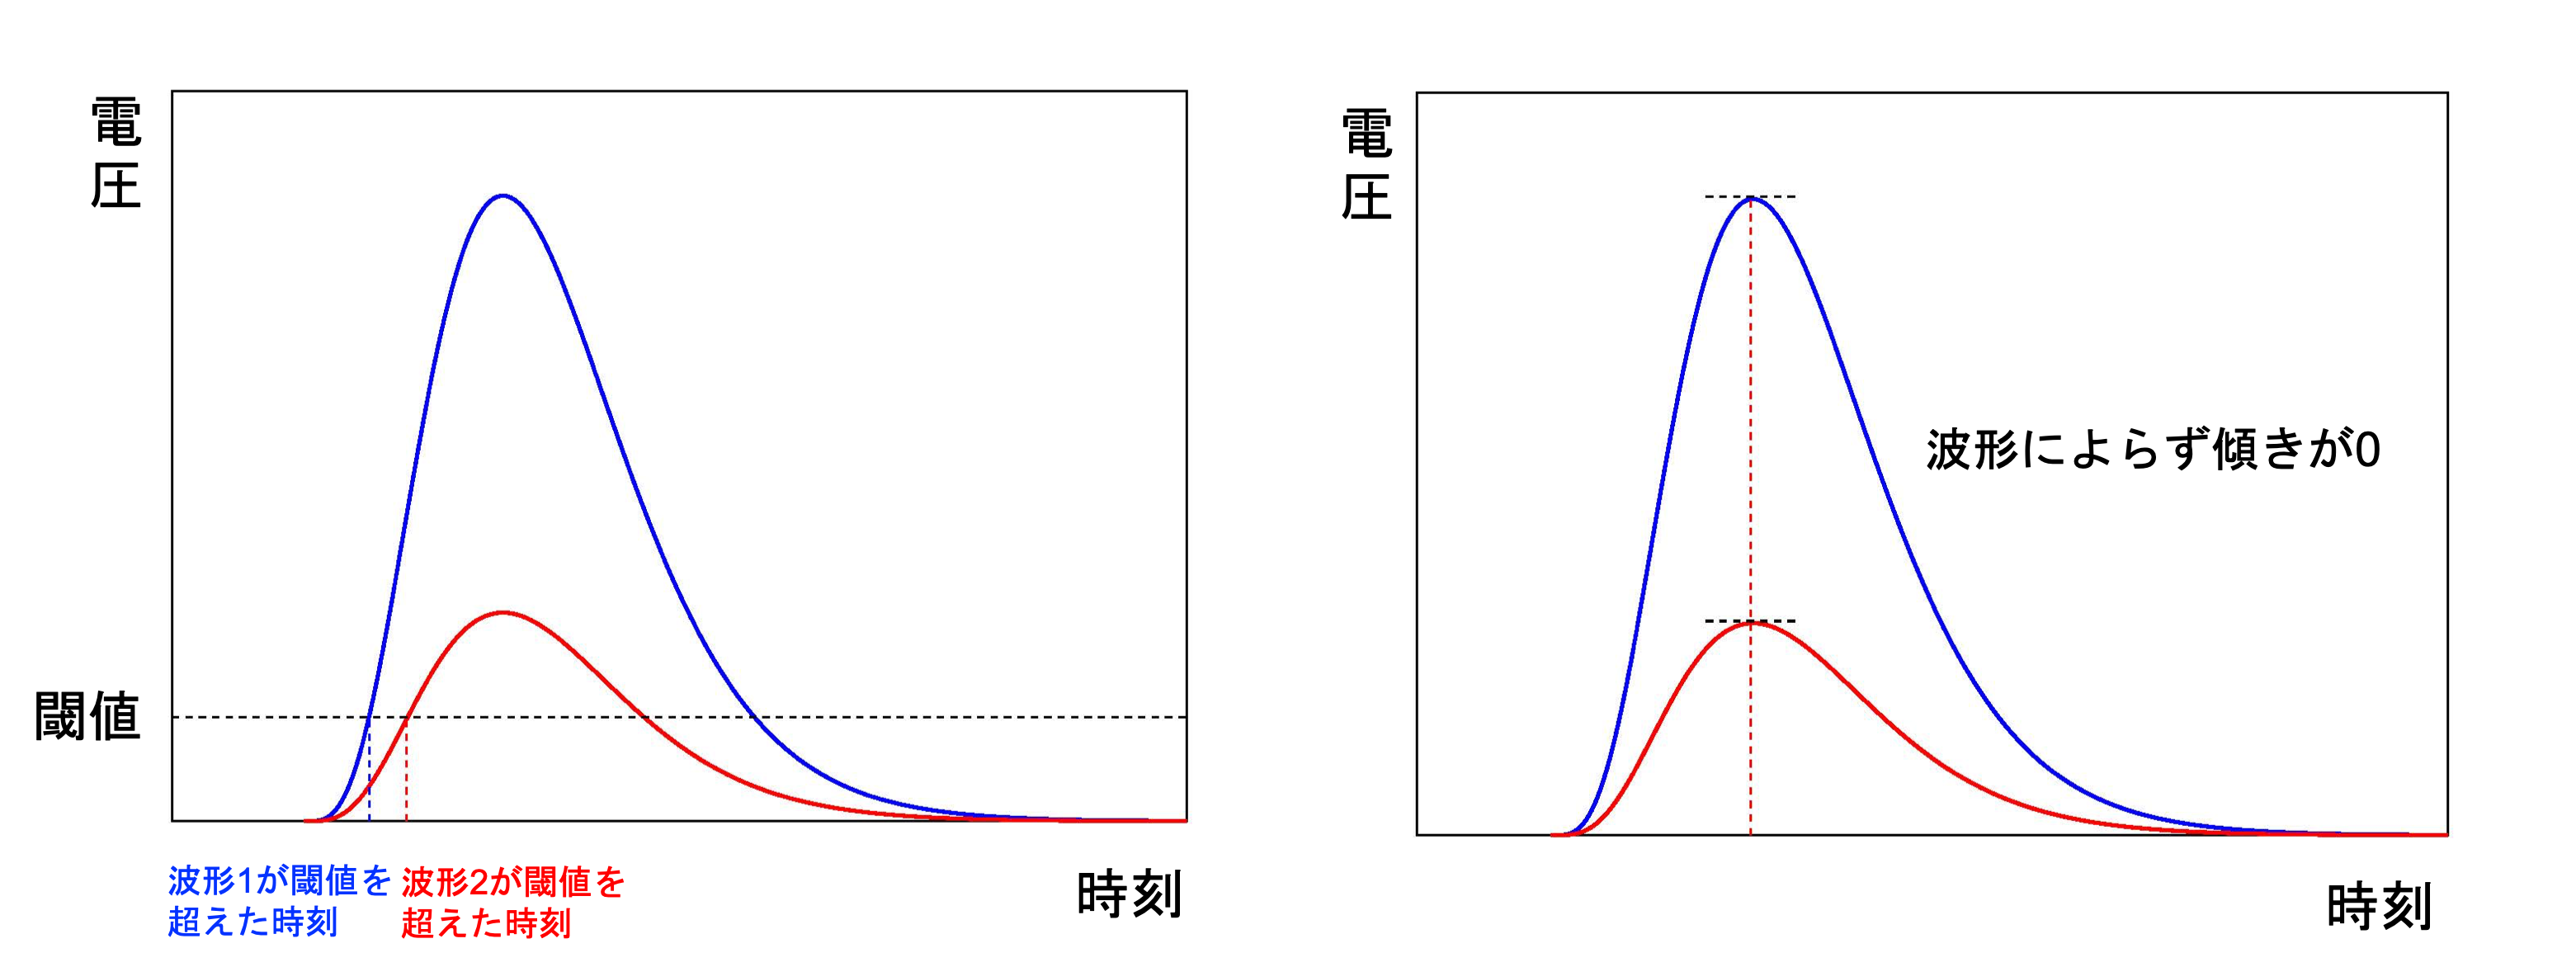 （左図）デジタル信号が0から1に切り替わった時間を決める際、通常は信号がある閾値を超えた時刻を測定しますが、この方法では信号の波形によって閾値を超える時刻が変わってしまいます。（右図）今回、開発チームは波形の傾き具体が頂点で平ら（傾きが0）になった時刻でデジタル信号の0と1を切り替える回路方式を採用しました。